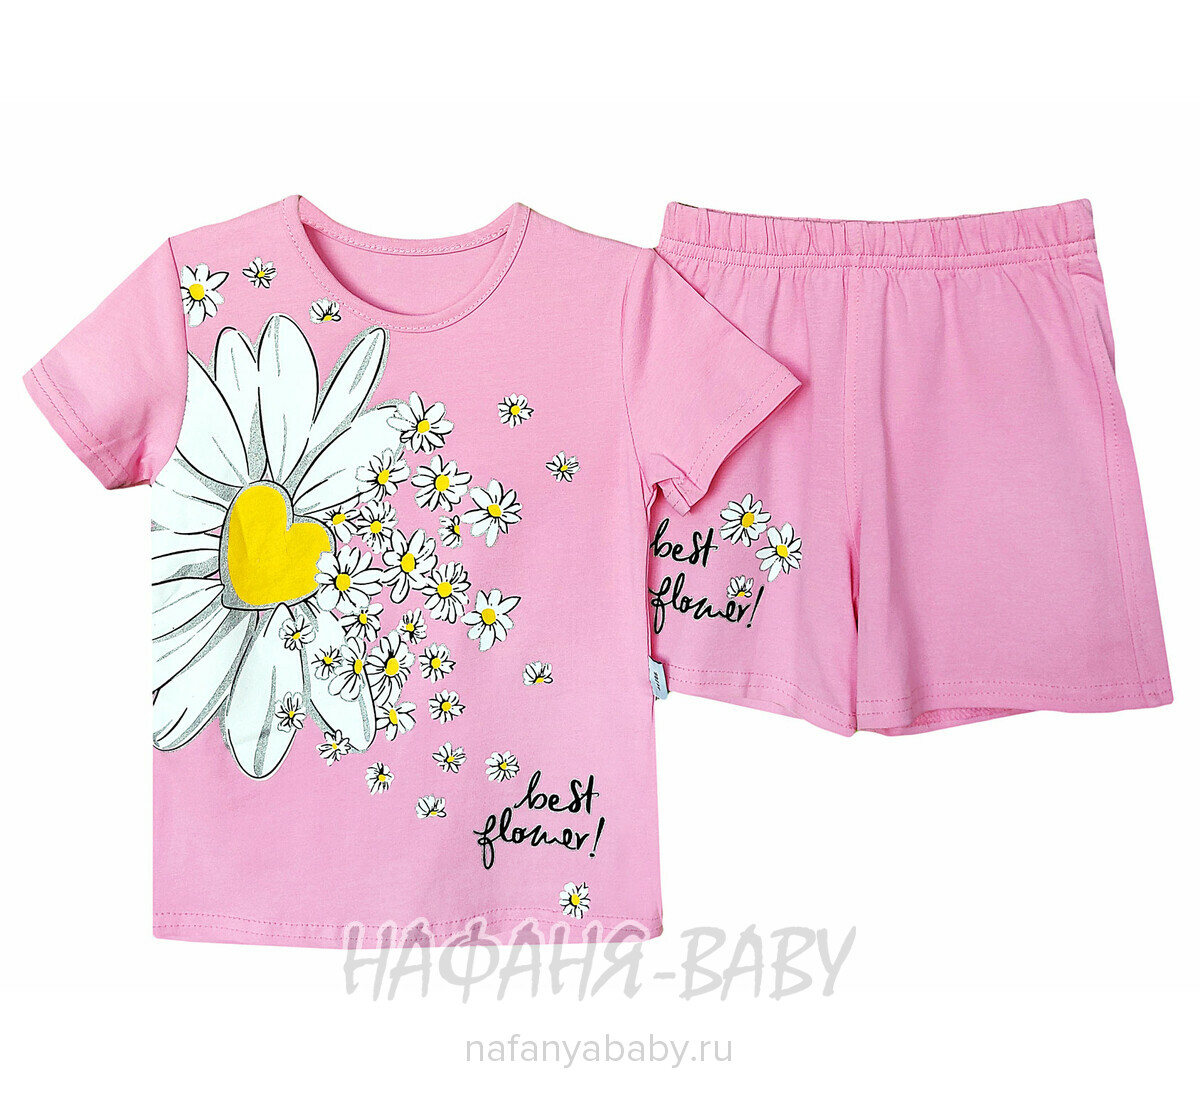 Детский костюм (футболка + шорты) RAVZA арт: 36106, 3-6 лет, цвет розовый, оптом Турция